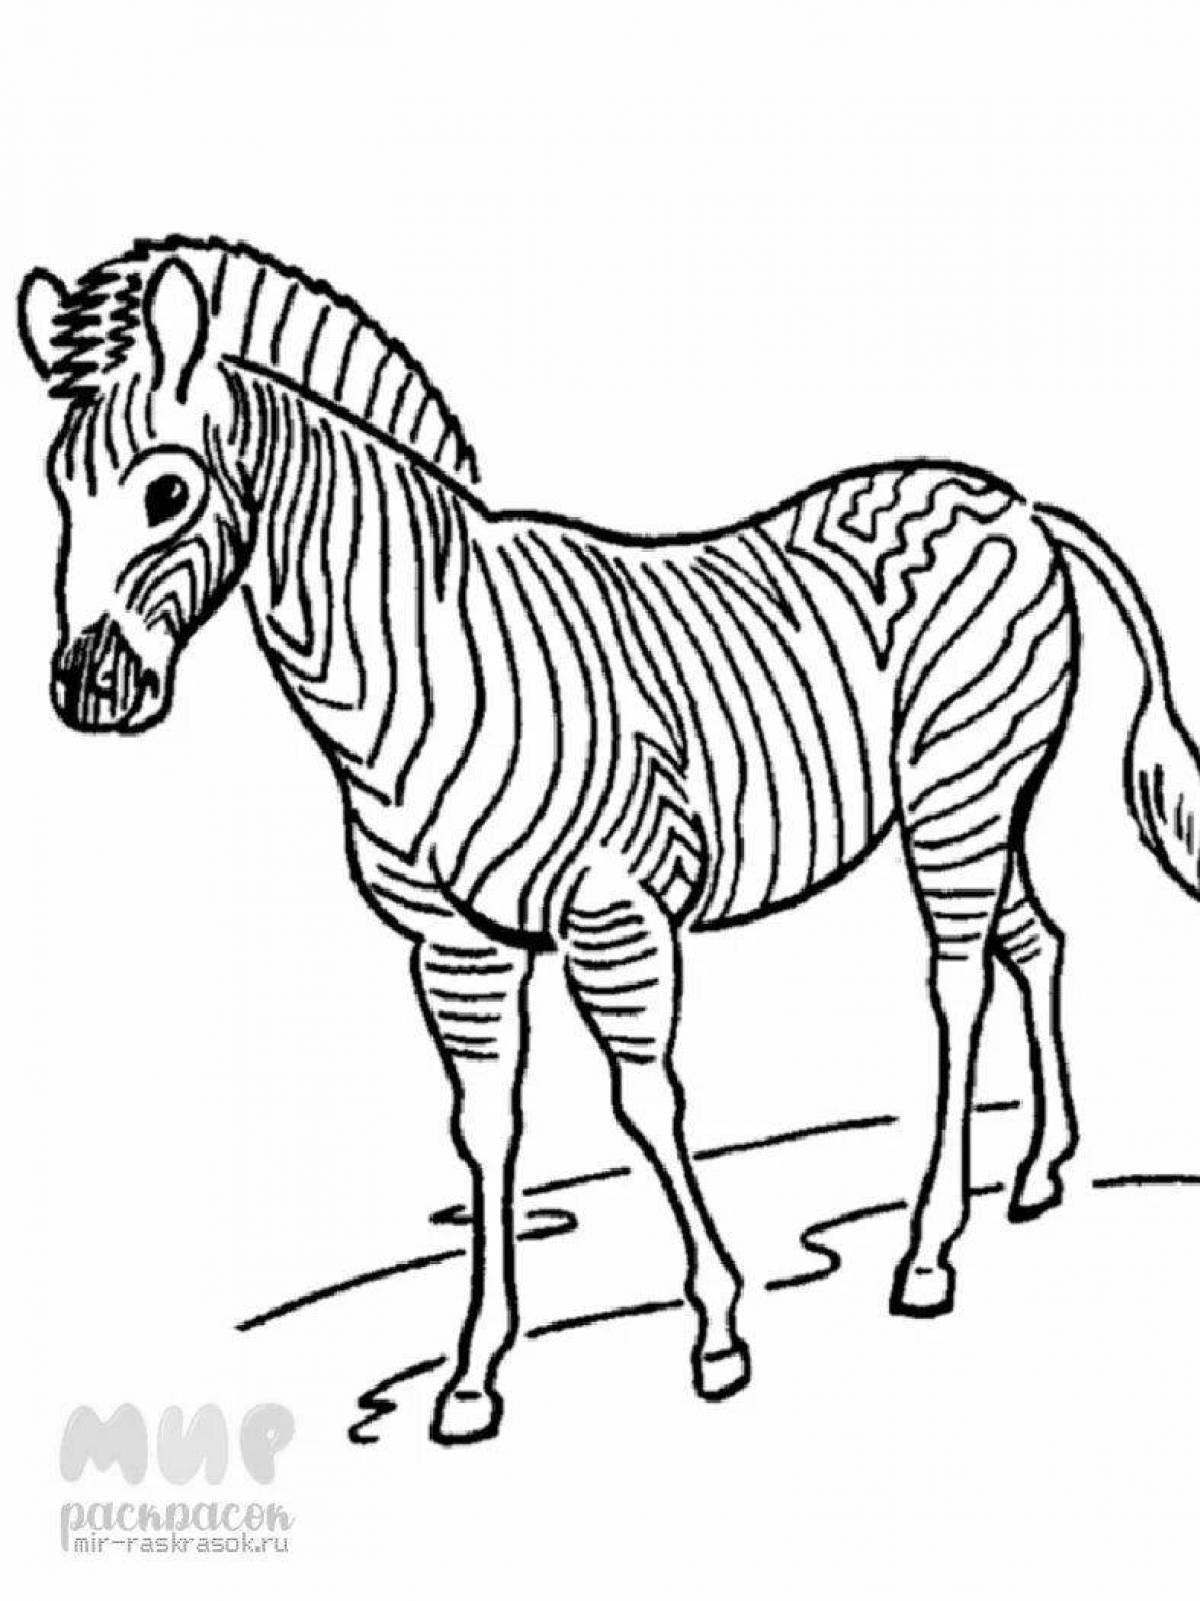 Радостный рисунок зебры для детей